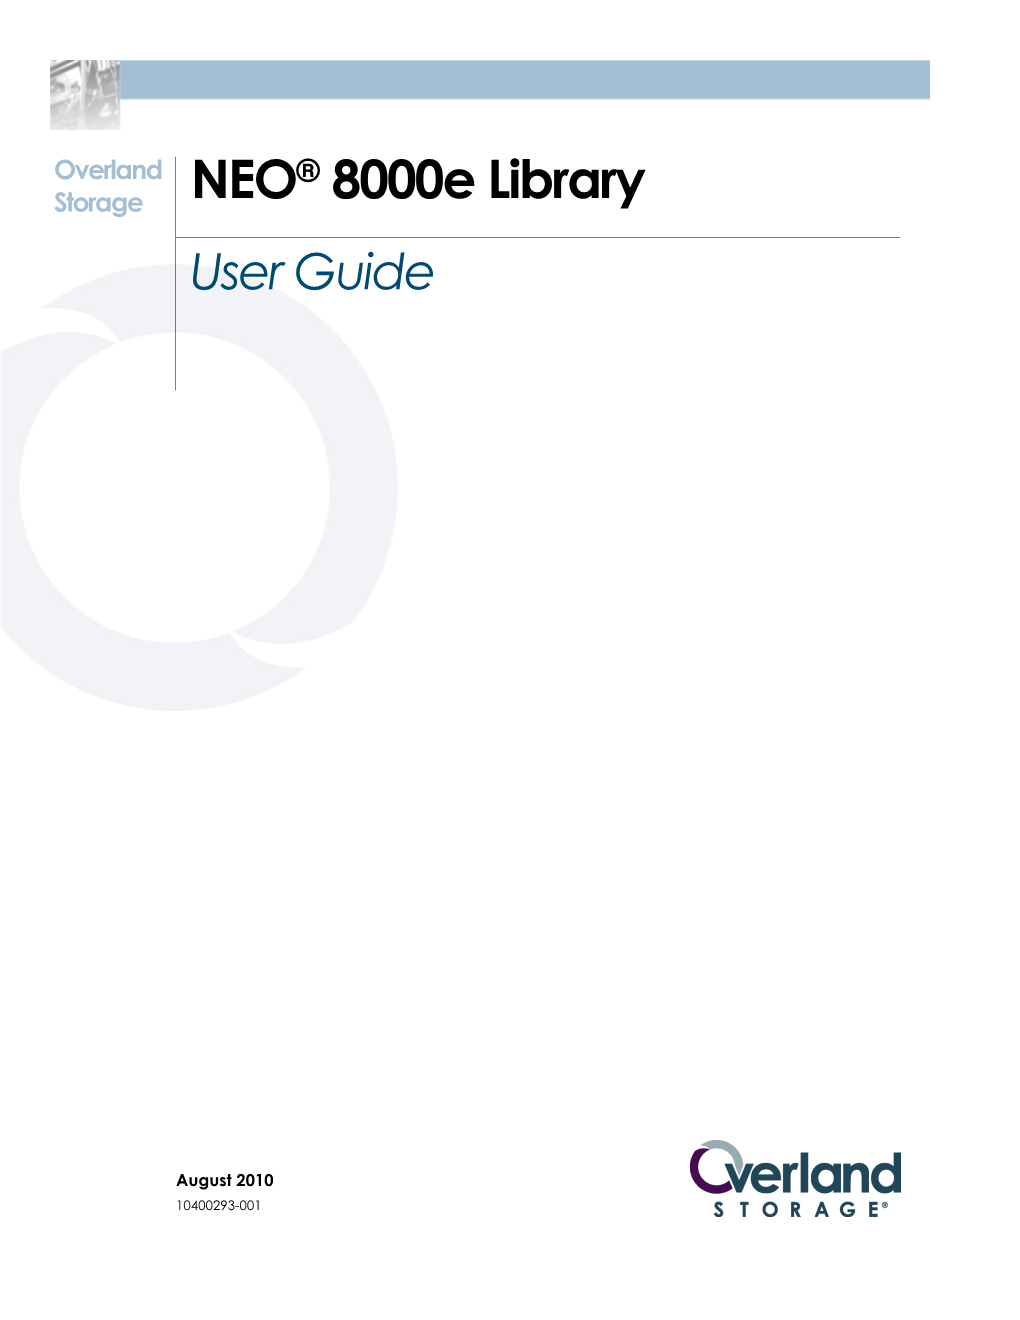 NEO 8000E Library User Guide